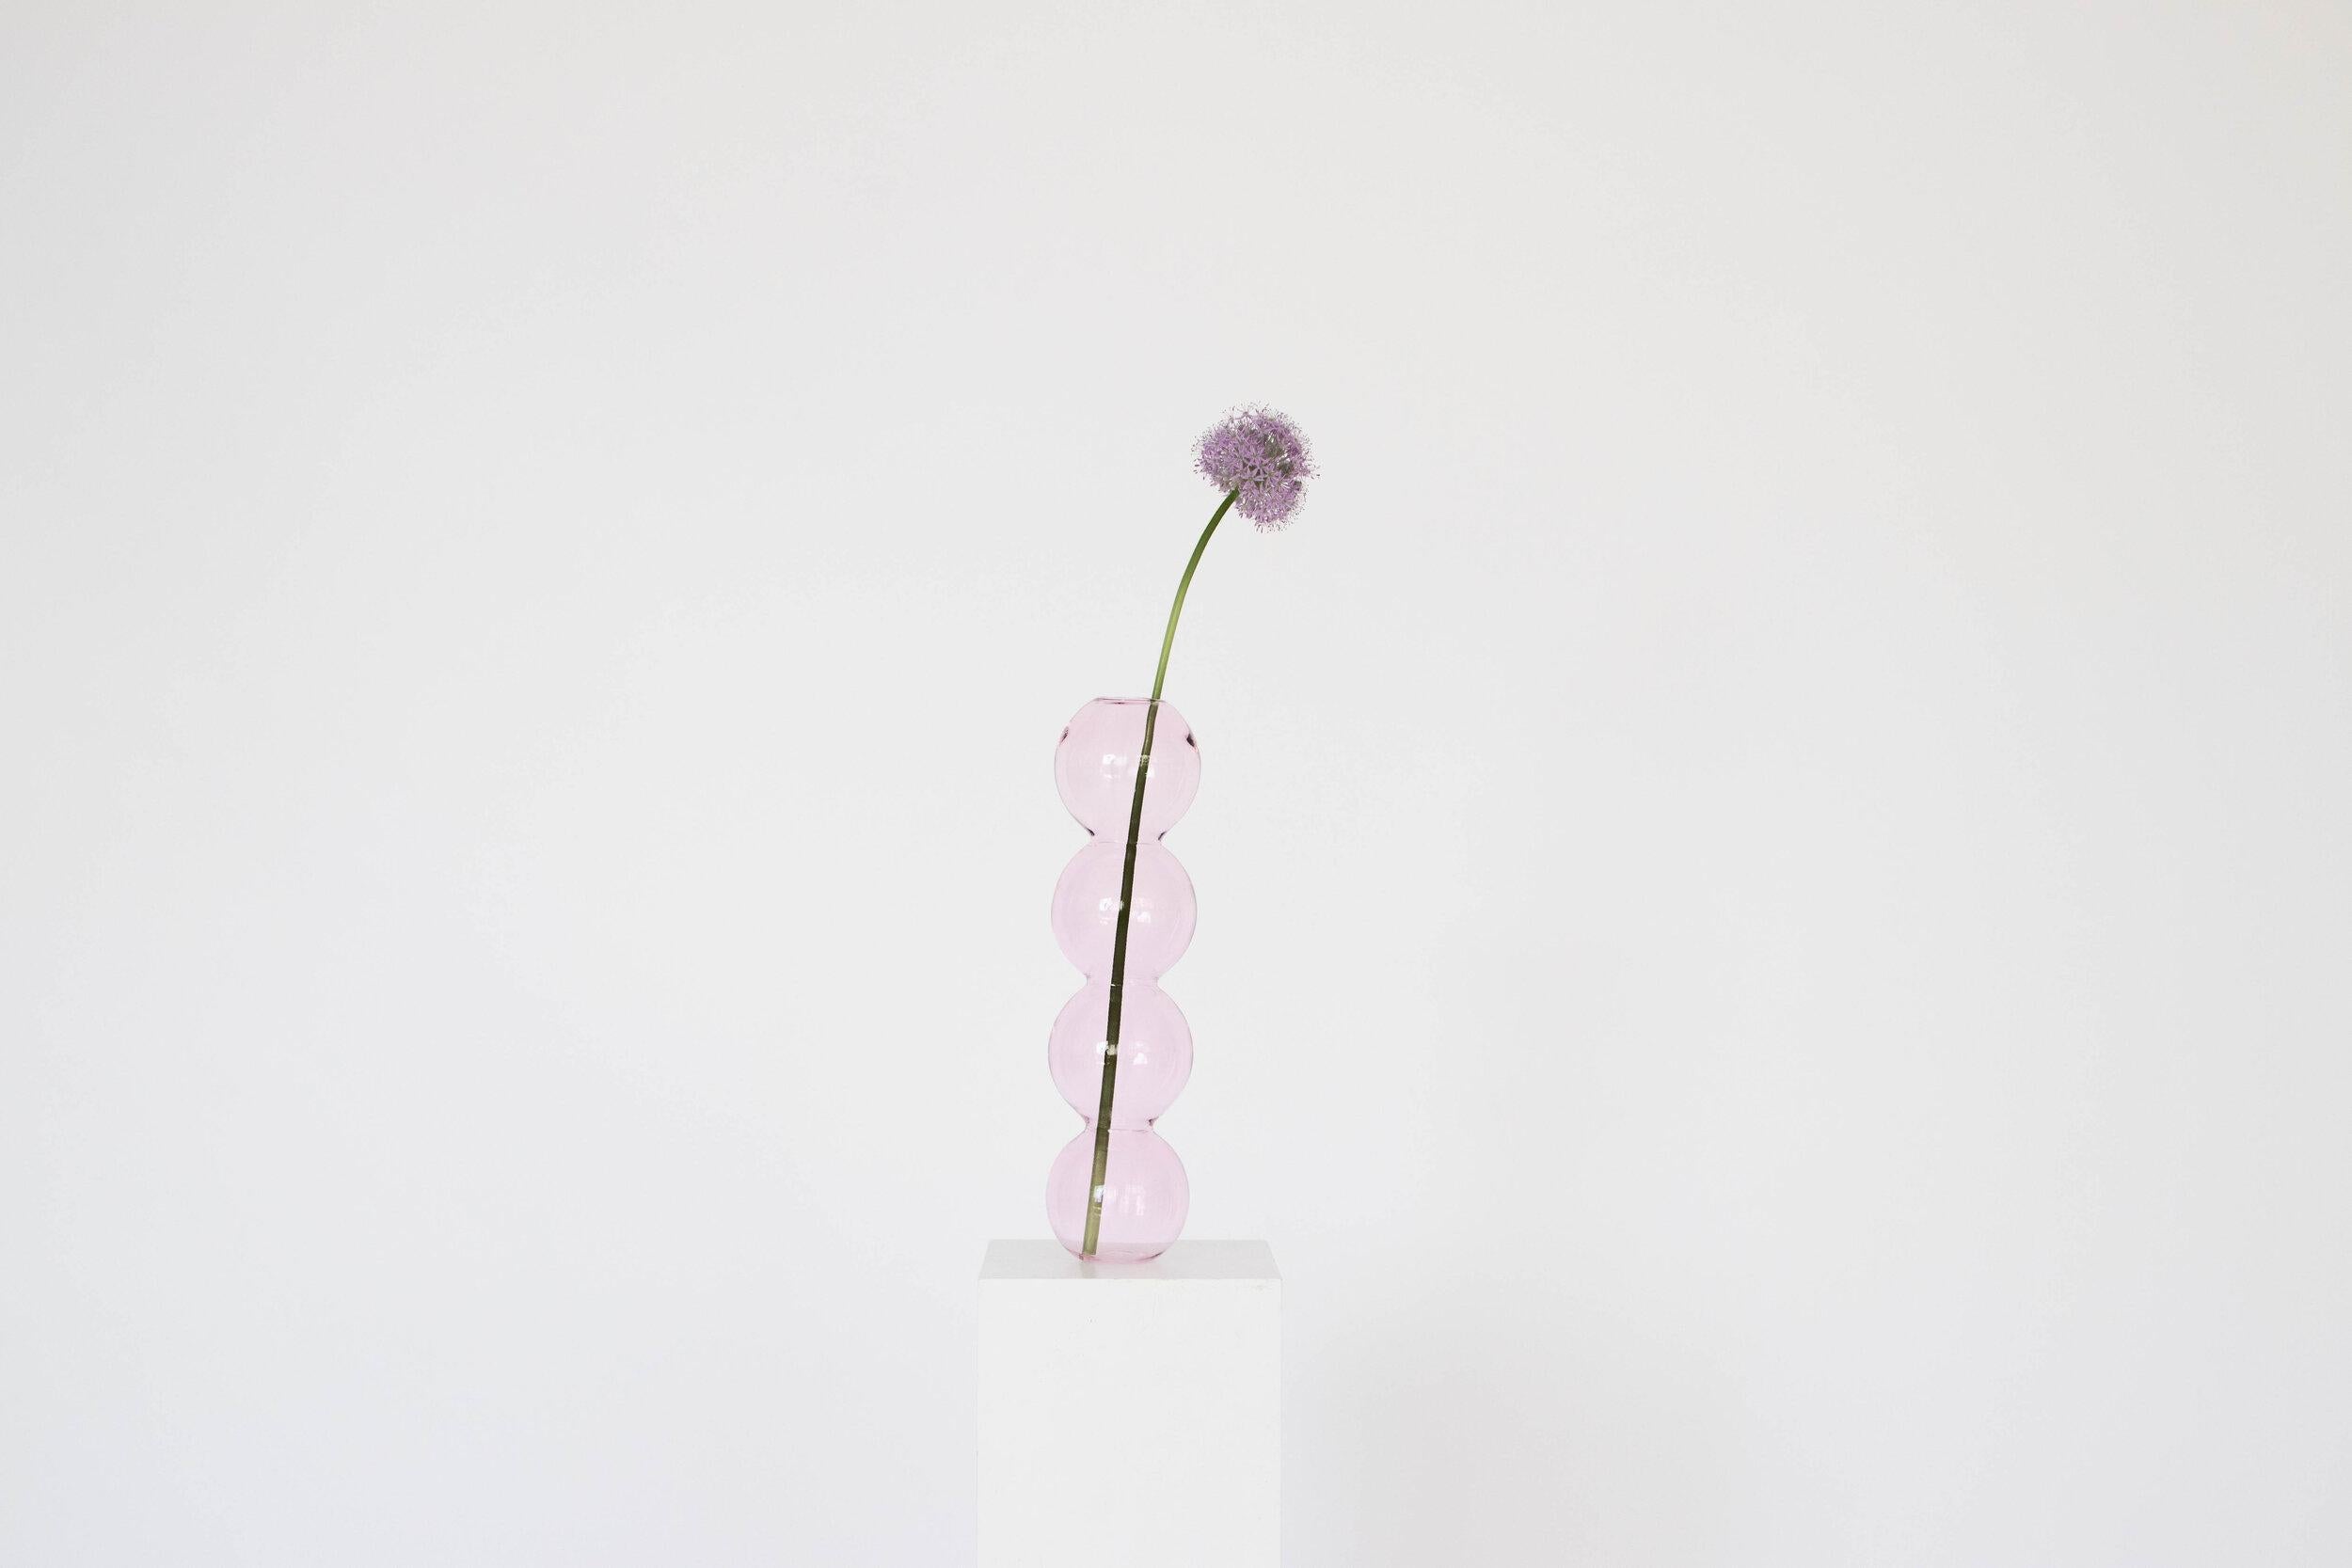 Ein Satz von 7 rosa Blasenvasen von Valeria Vasi
Handgefertigt in Barcelona, 2021
MATERIALIEN: Glas
Abmessungen: 38 x 10 cm
Auch erhältlich in: klar, türkis, blau. 

Eine skulpturale Vase, die in Barcelona von einem geschickten lokalen